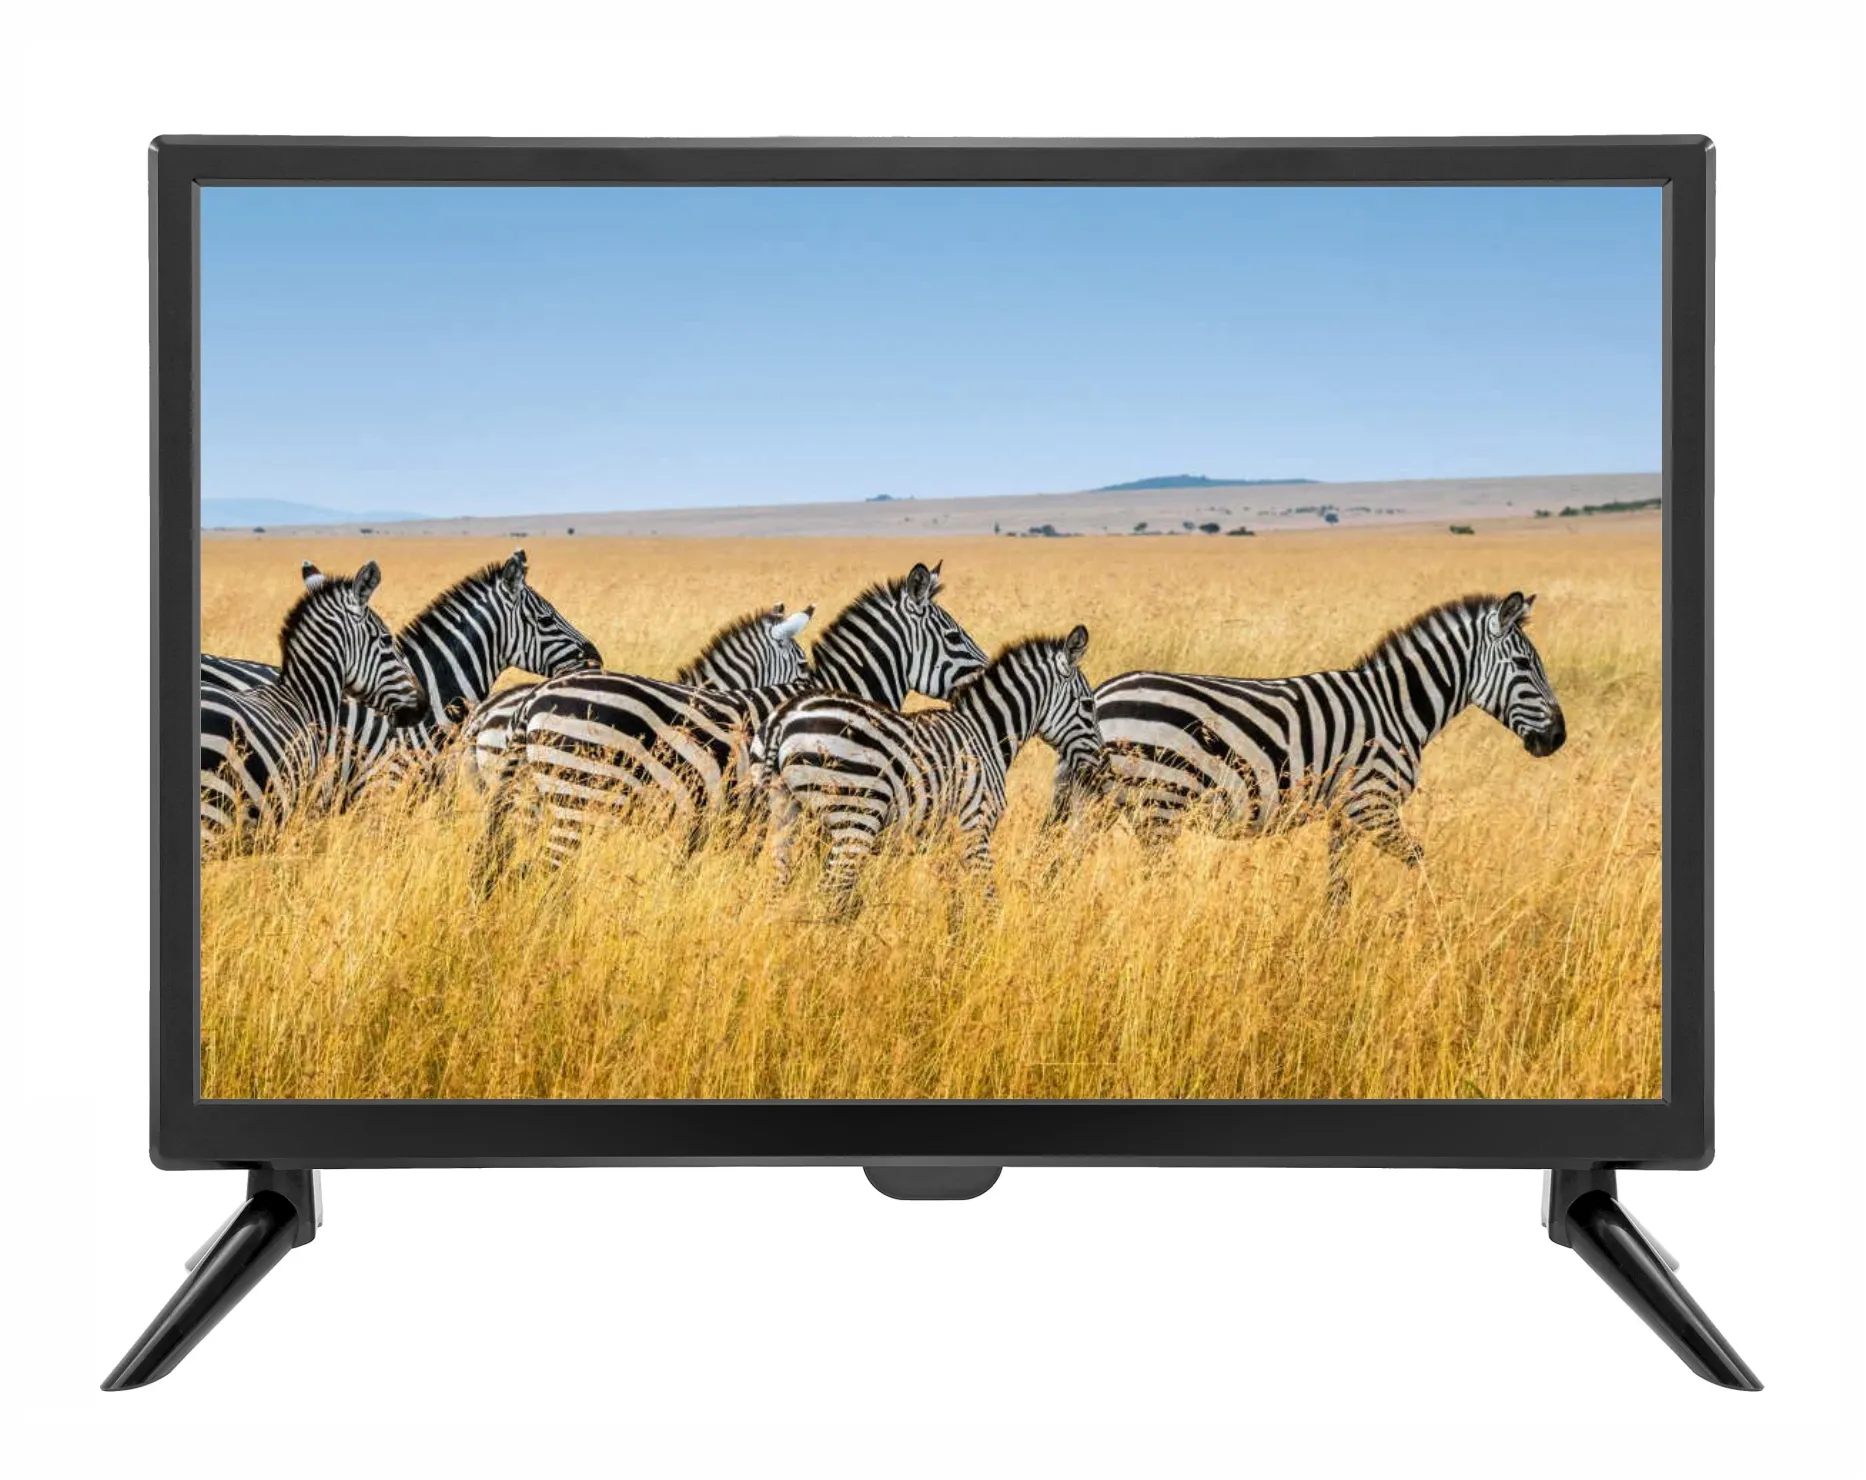 Bon prix 24 pouces 12V DC TV grand écran HDTV et moniteur 24 "Portable LED TV pour la télévision africaine